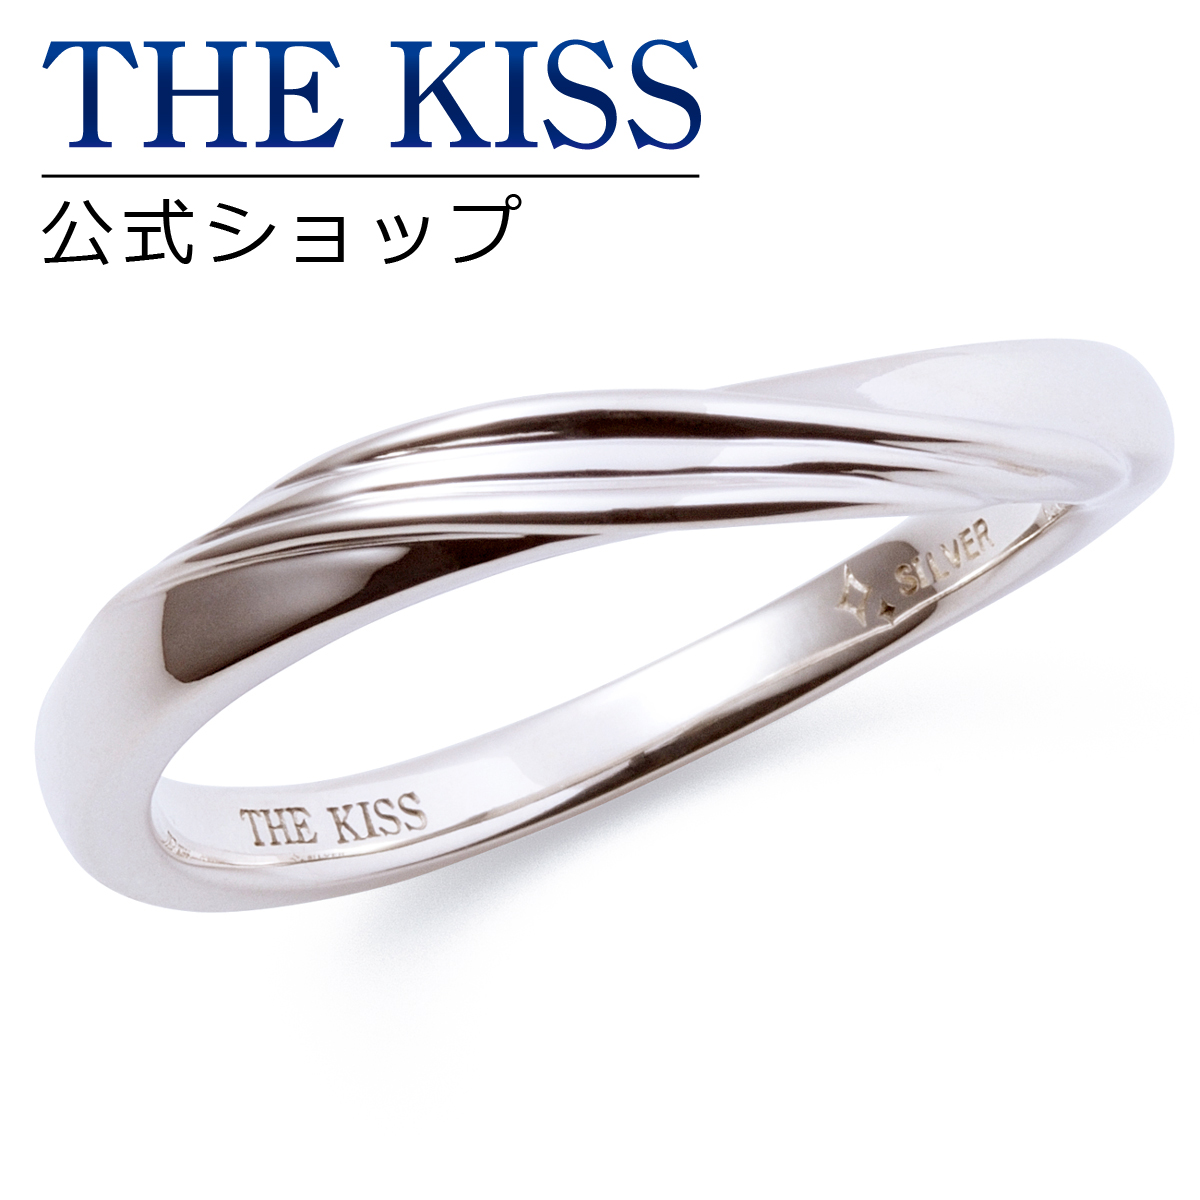 THE KISS 公式ショップ シルバー ペアリング メンズ 単品 ペアアクセサリー カップル に 人気 の ジュエリー